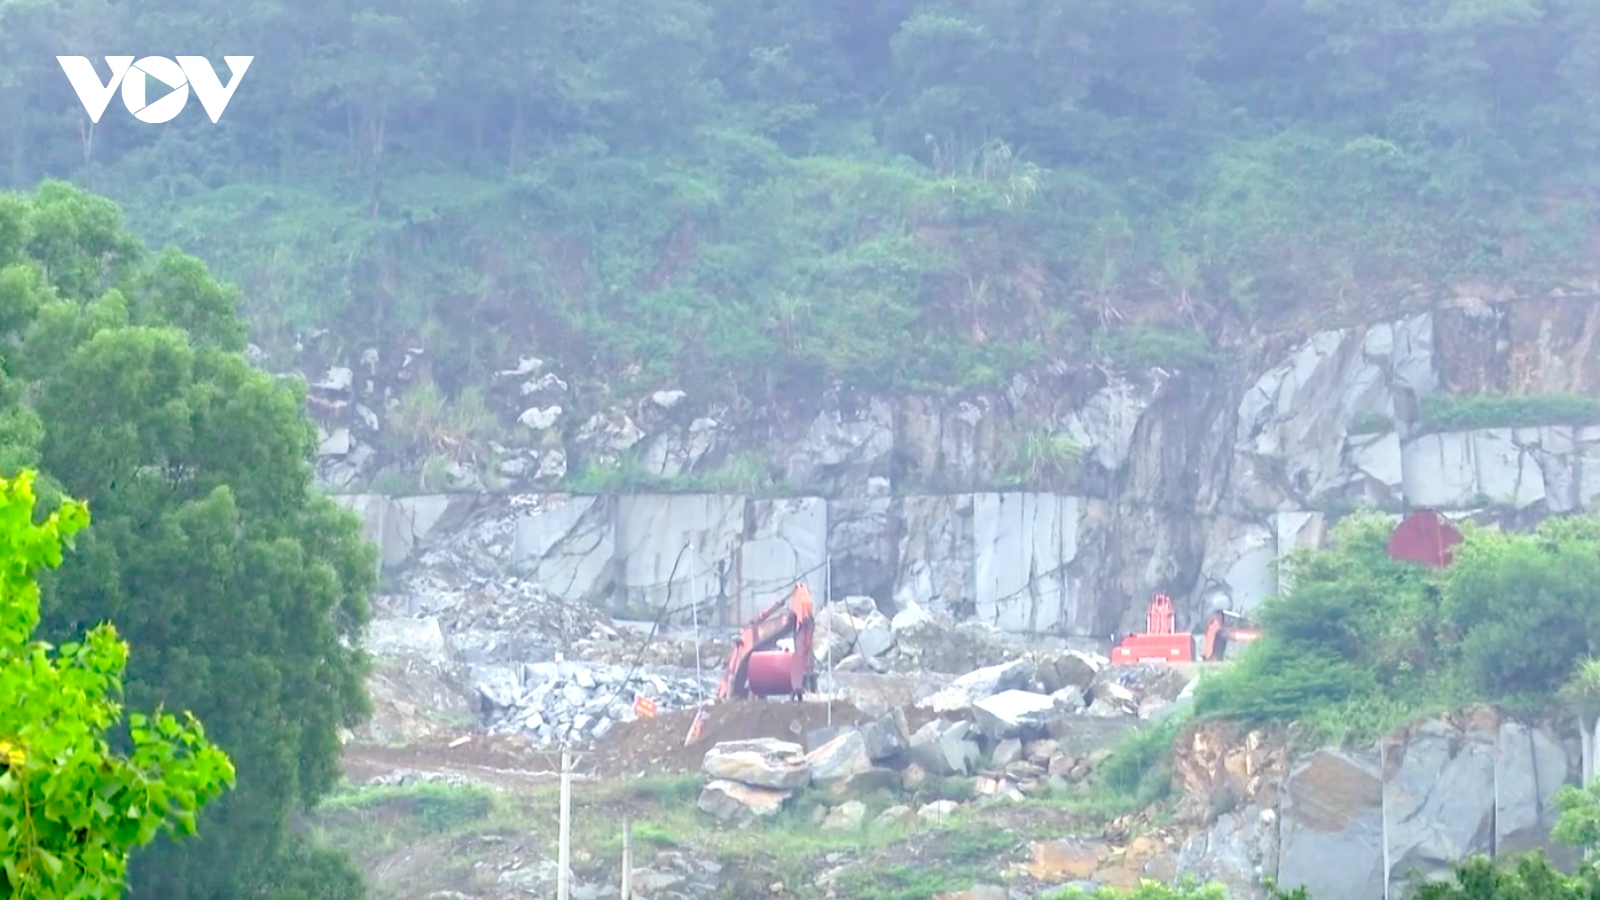 Mỏ đá ở Thanh Hóa bị tạm dừng khai thác nhưng vẫn ngang nhiên hoạt động